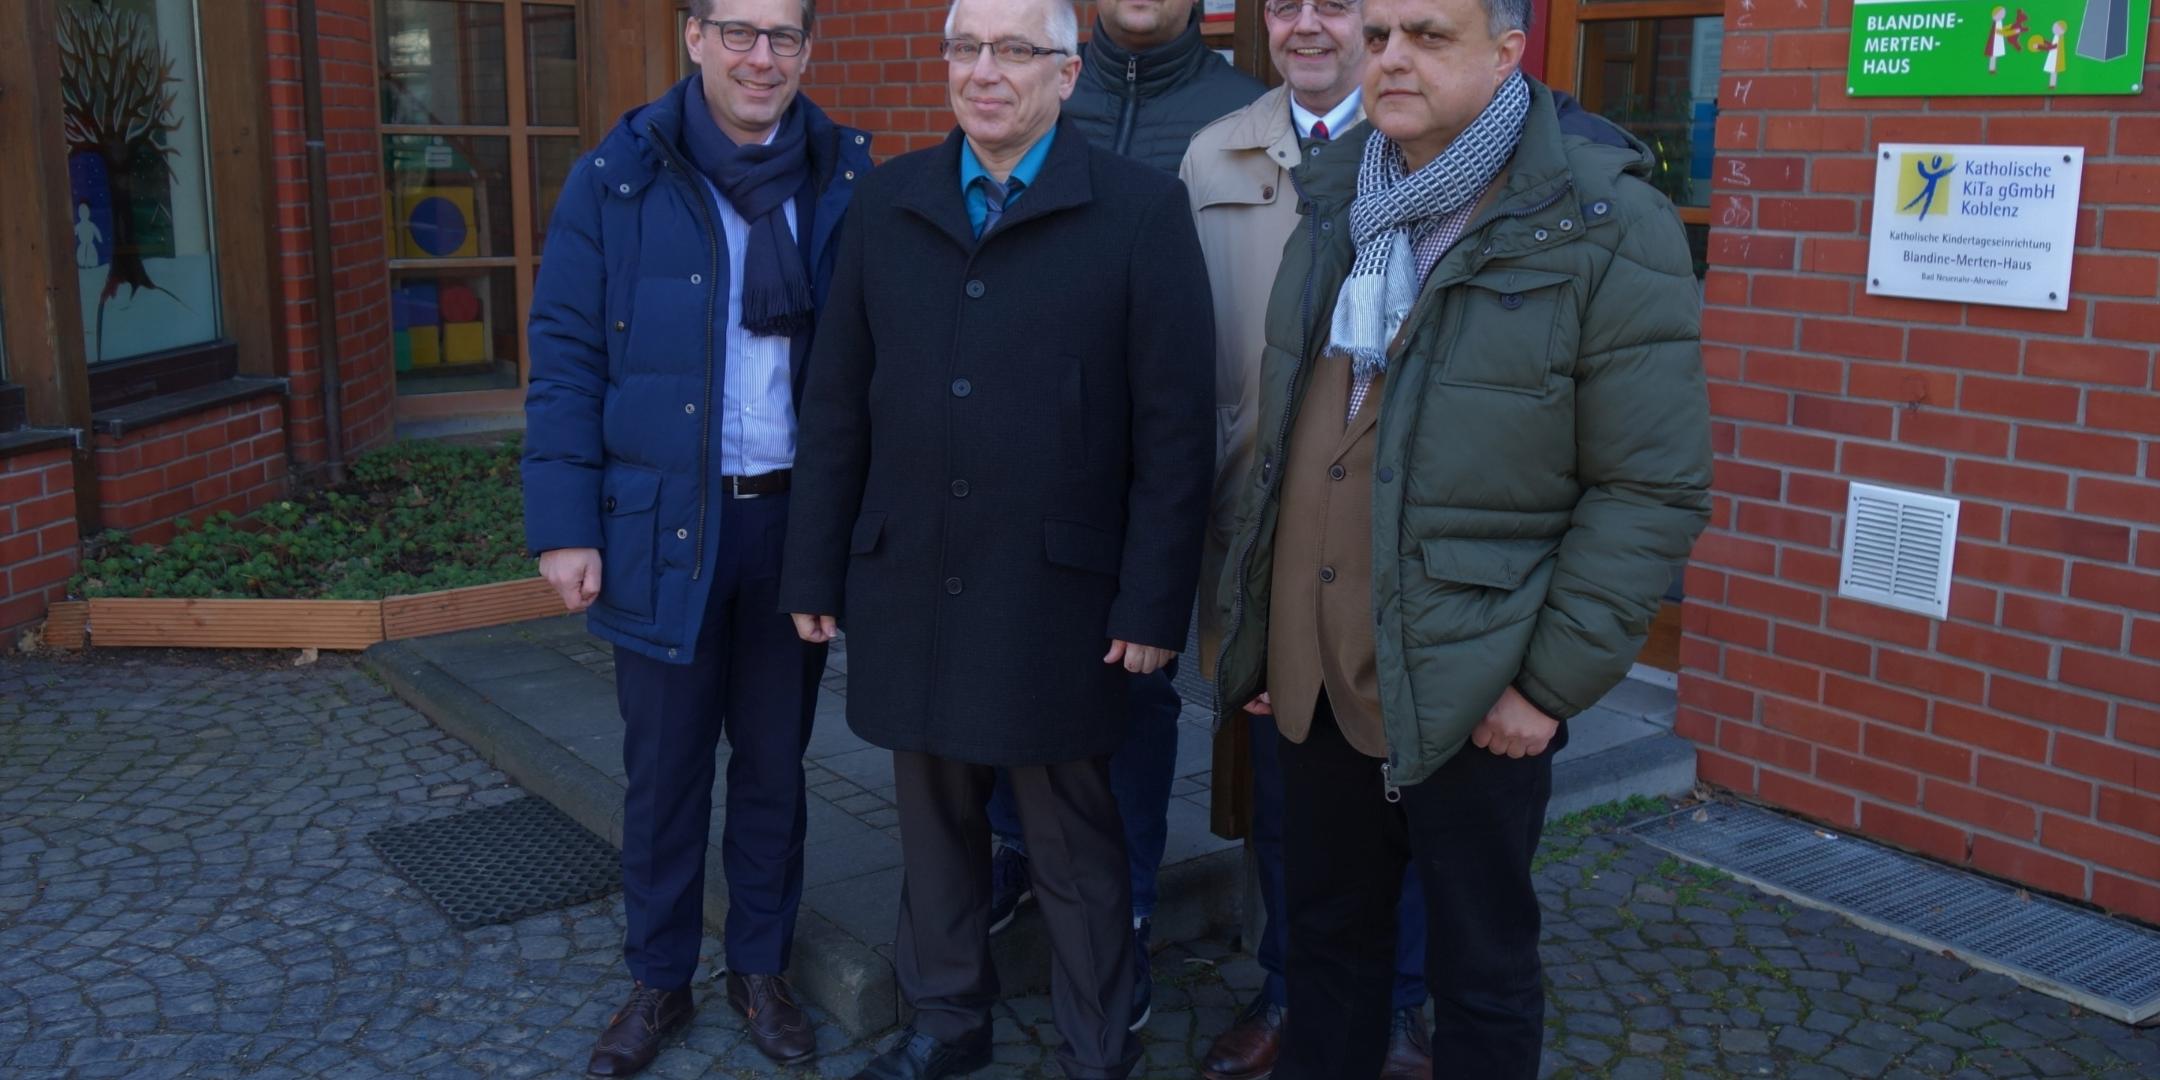 David Bongart, Michael Wolter, Jürgen Ritter, Dr. Thomas Fößel und Pfarrer Peter Dörrenbächer (v. links) vom Förderverein.